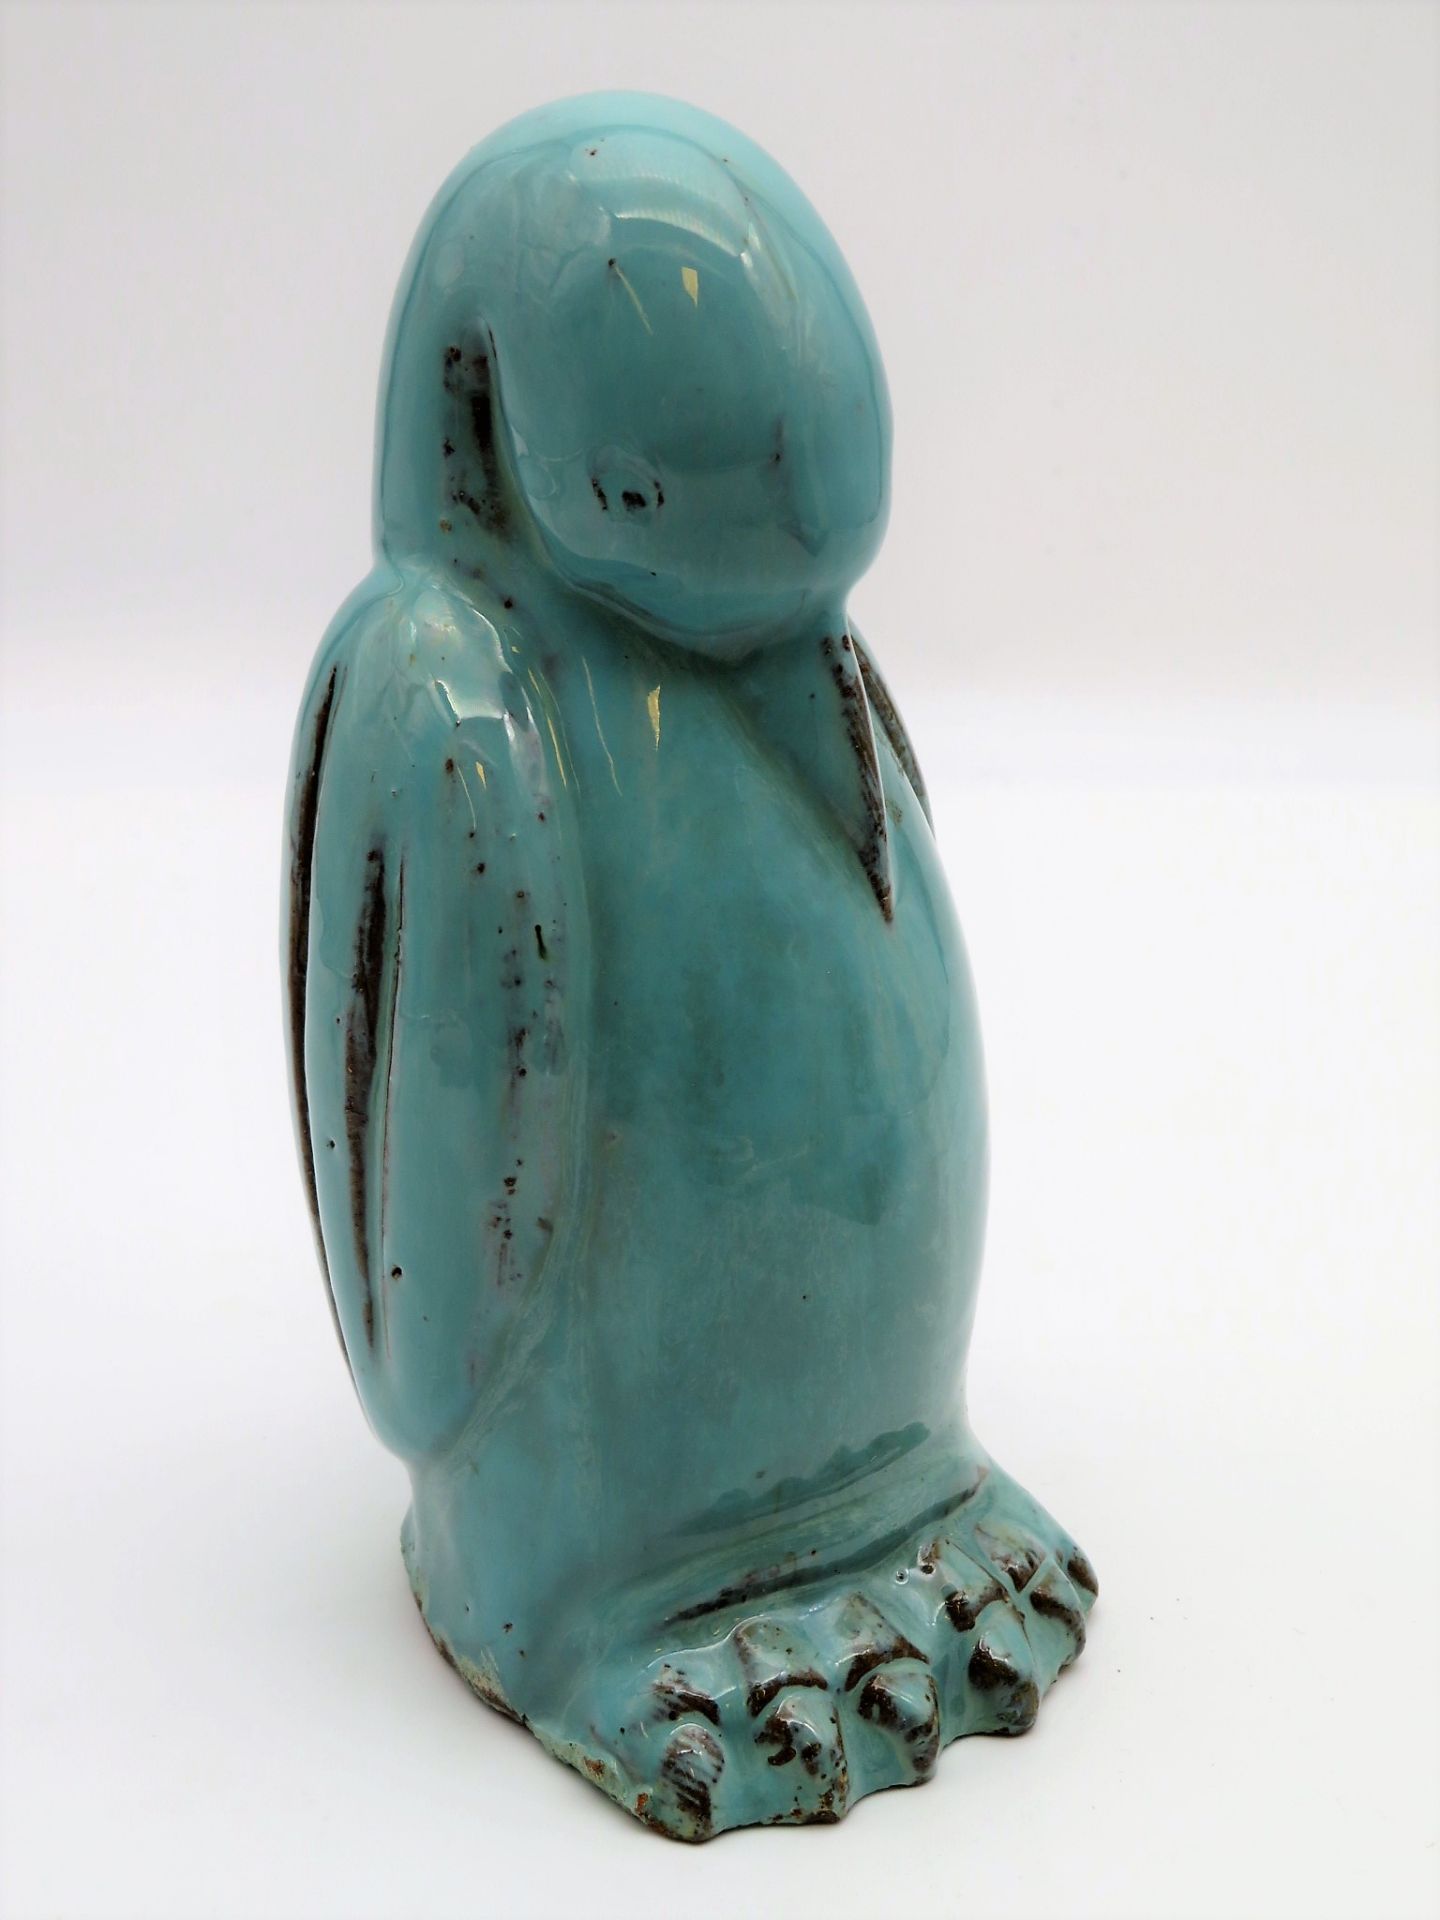 Pinguin, Ton mit grünlicher Glasur, 1. Hälfte 20. Jahrhundert, h 20 cm, d 10 cm.